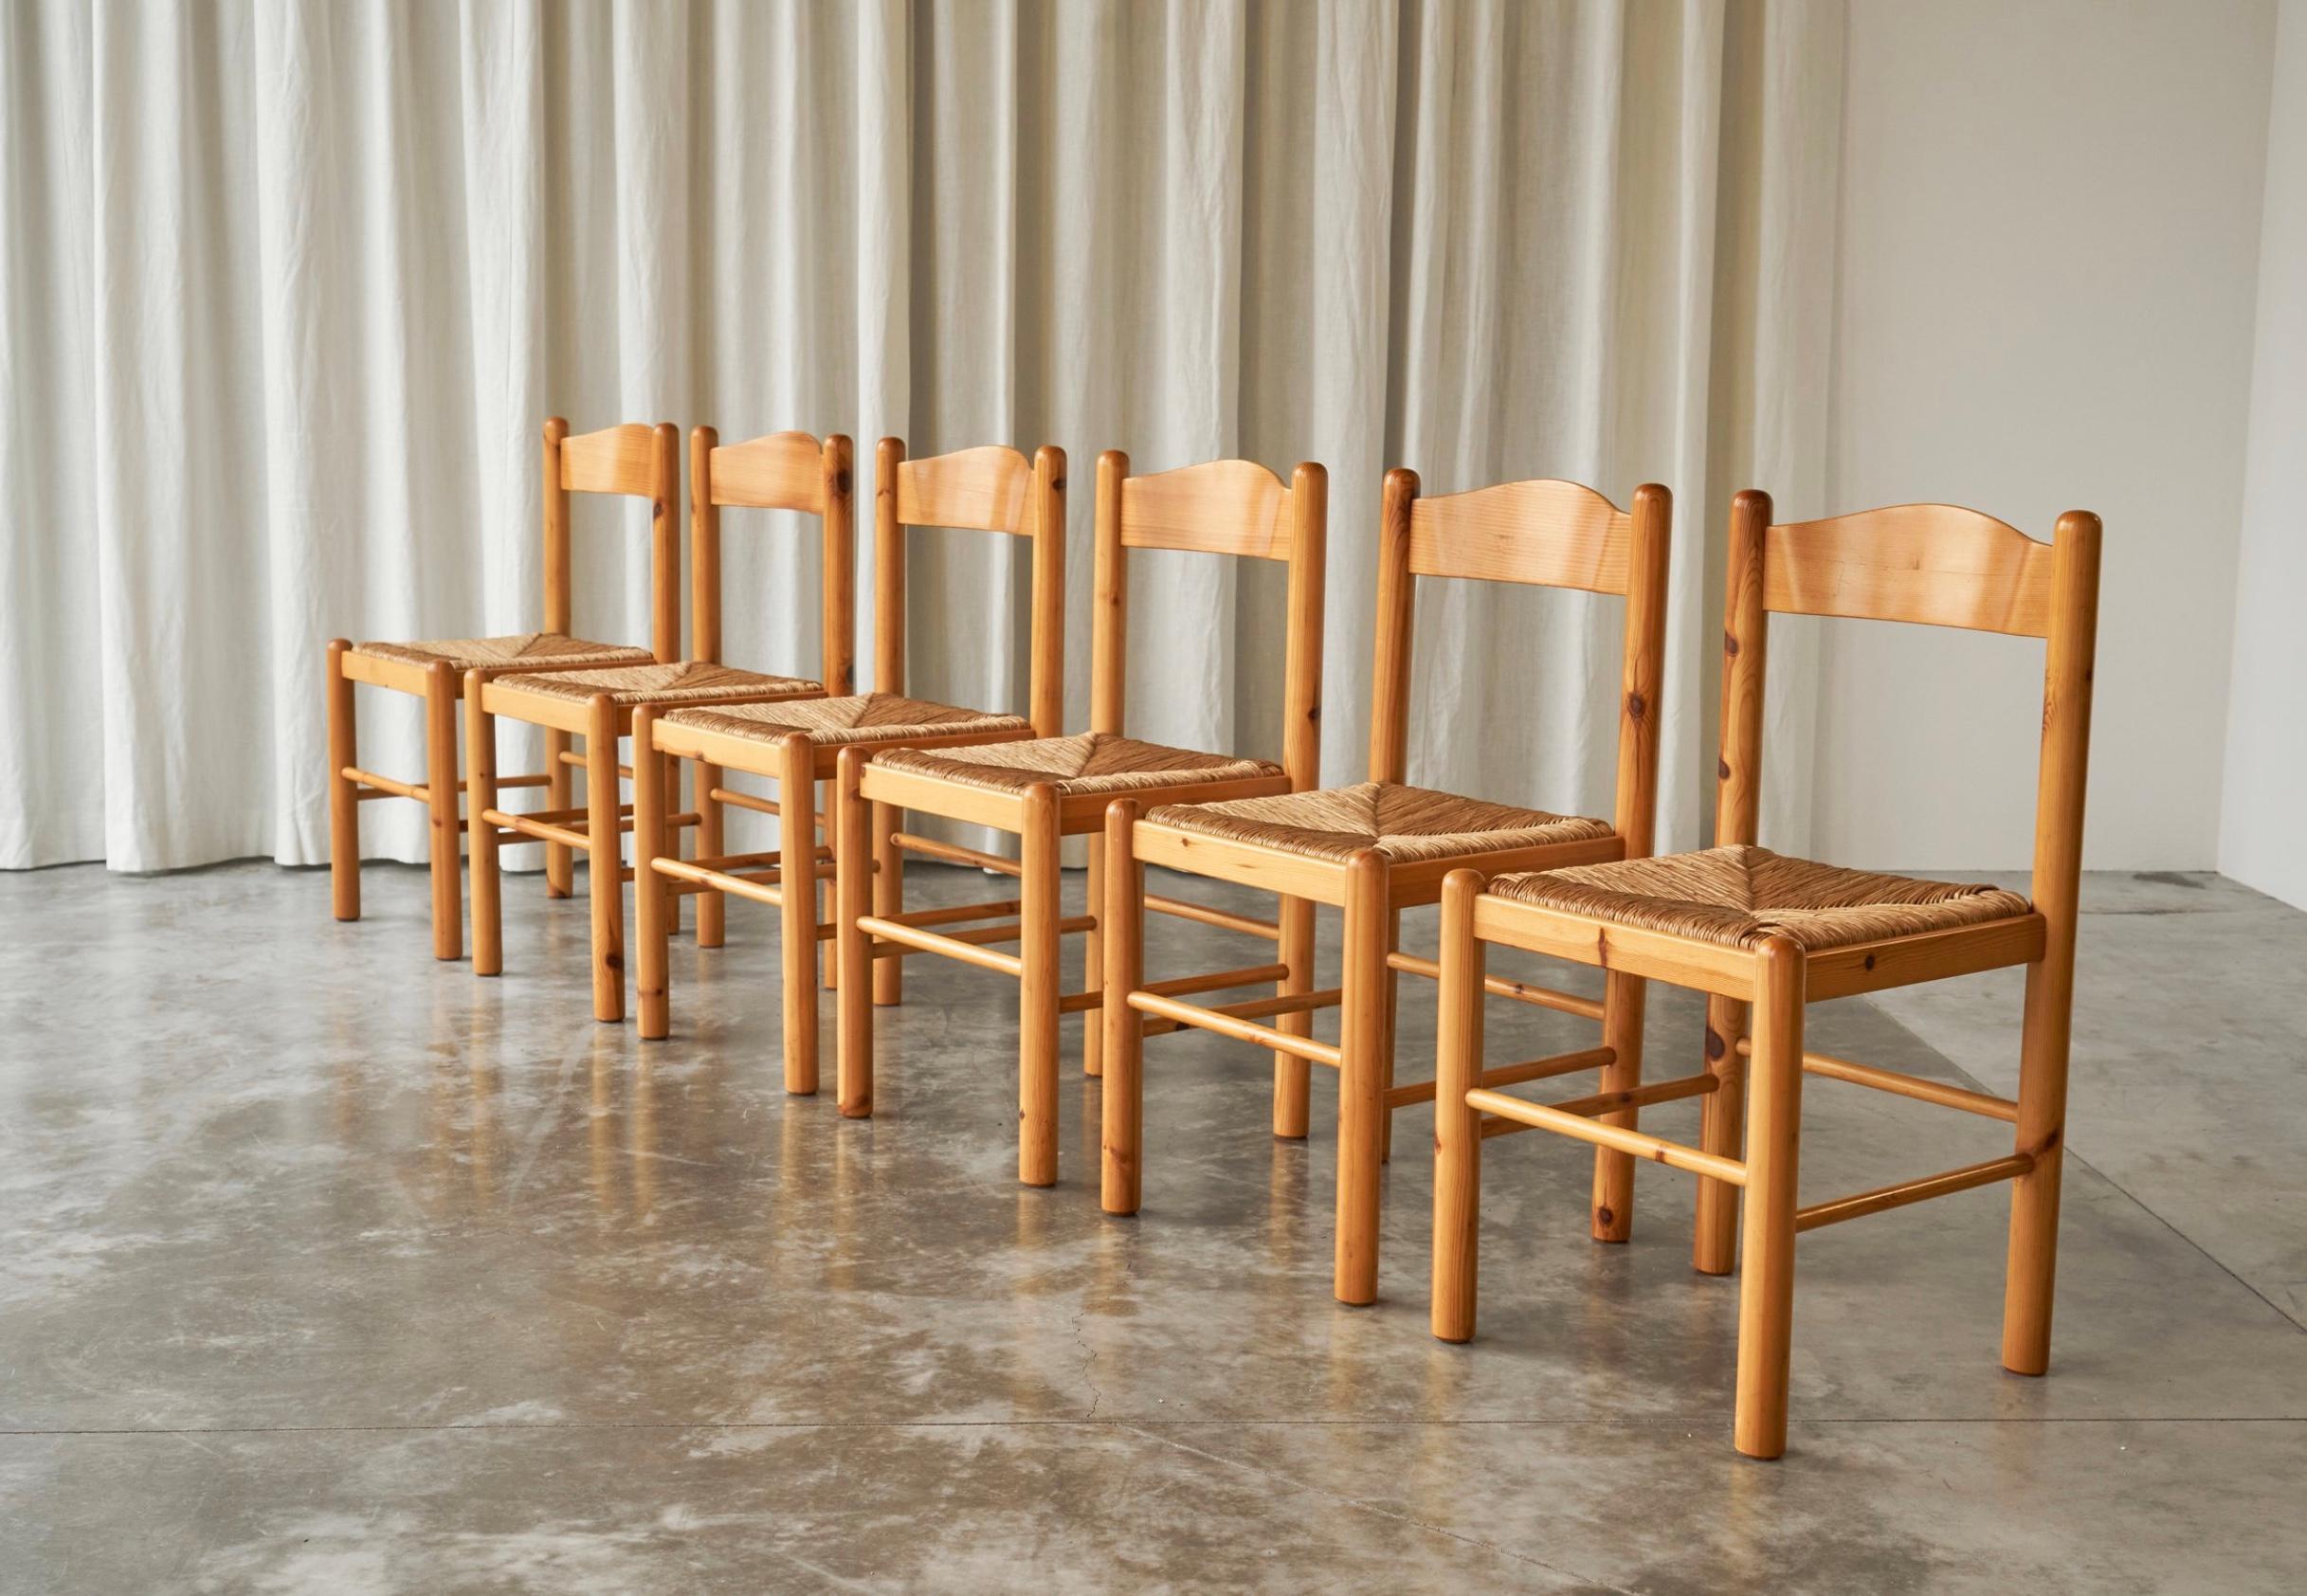 Un superbe ensemble de 6 chaises de salle à manger en pin et jonc expressif, fabriqué quelque part dans les années 1960. 

Il s'agit d'un ensemble de véritables chaises modernistes de style chalet avec des notes de ressemblance liées à des pièces de